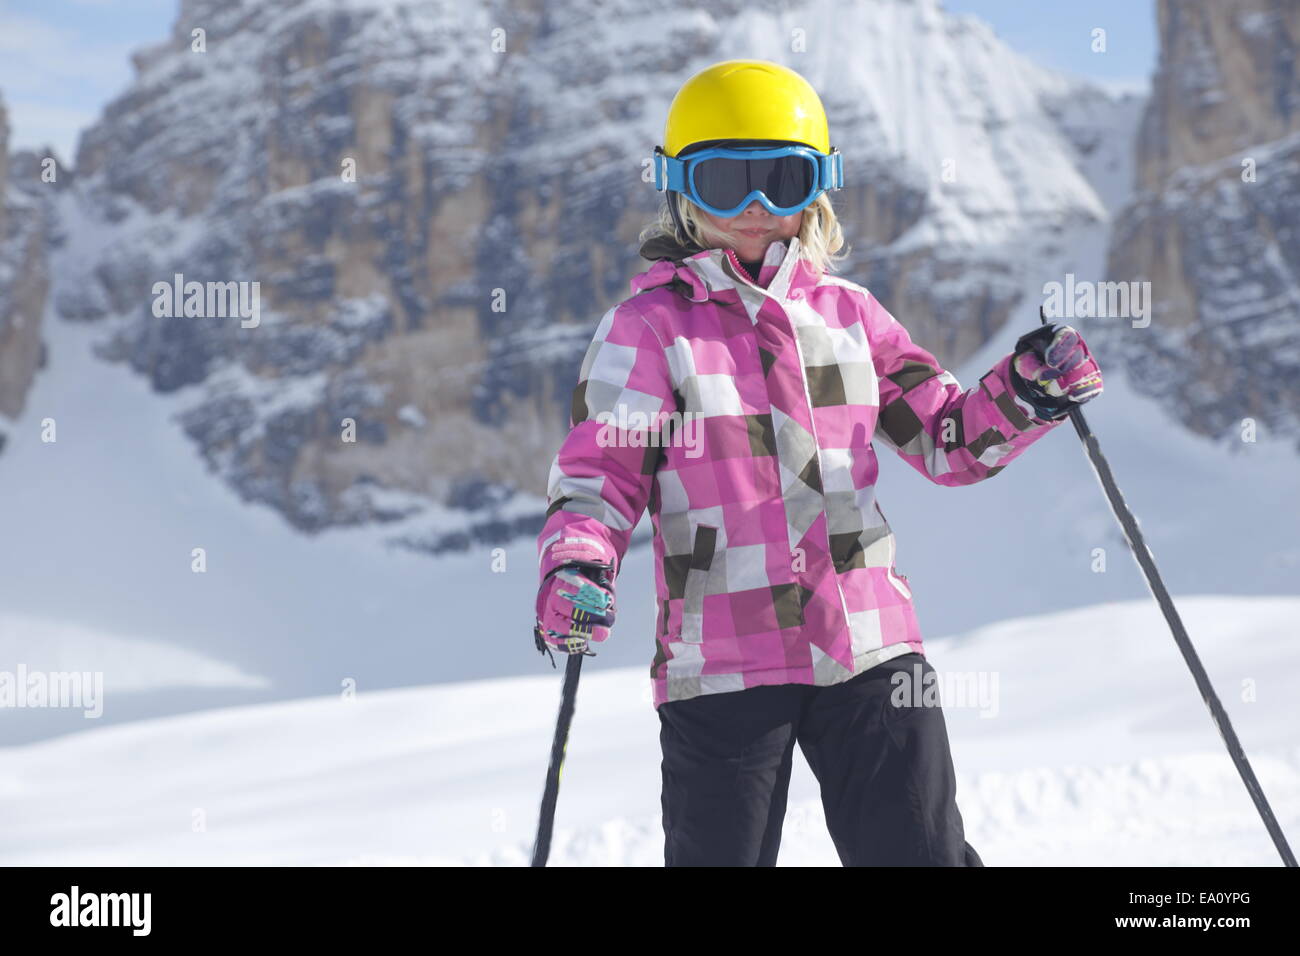 skiing girl Stock Photo